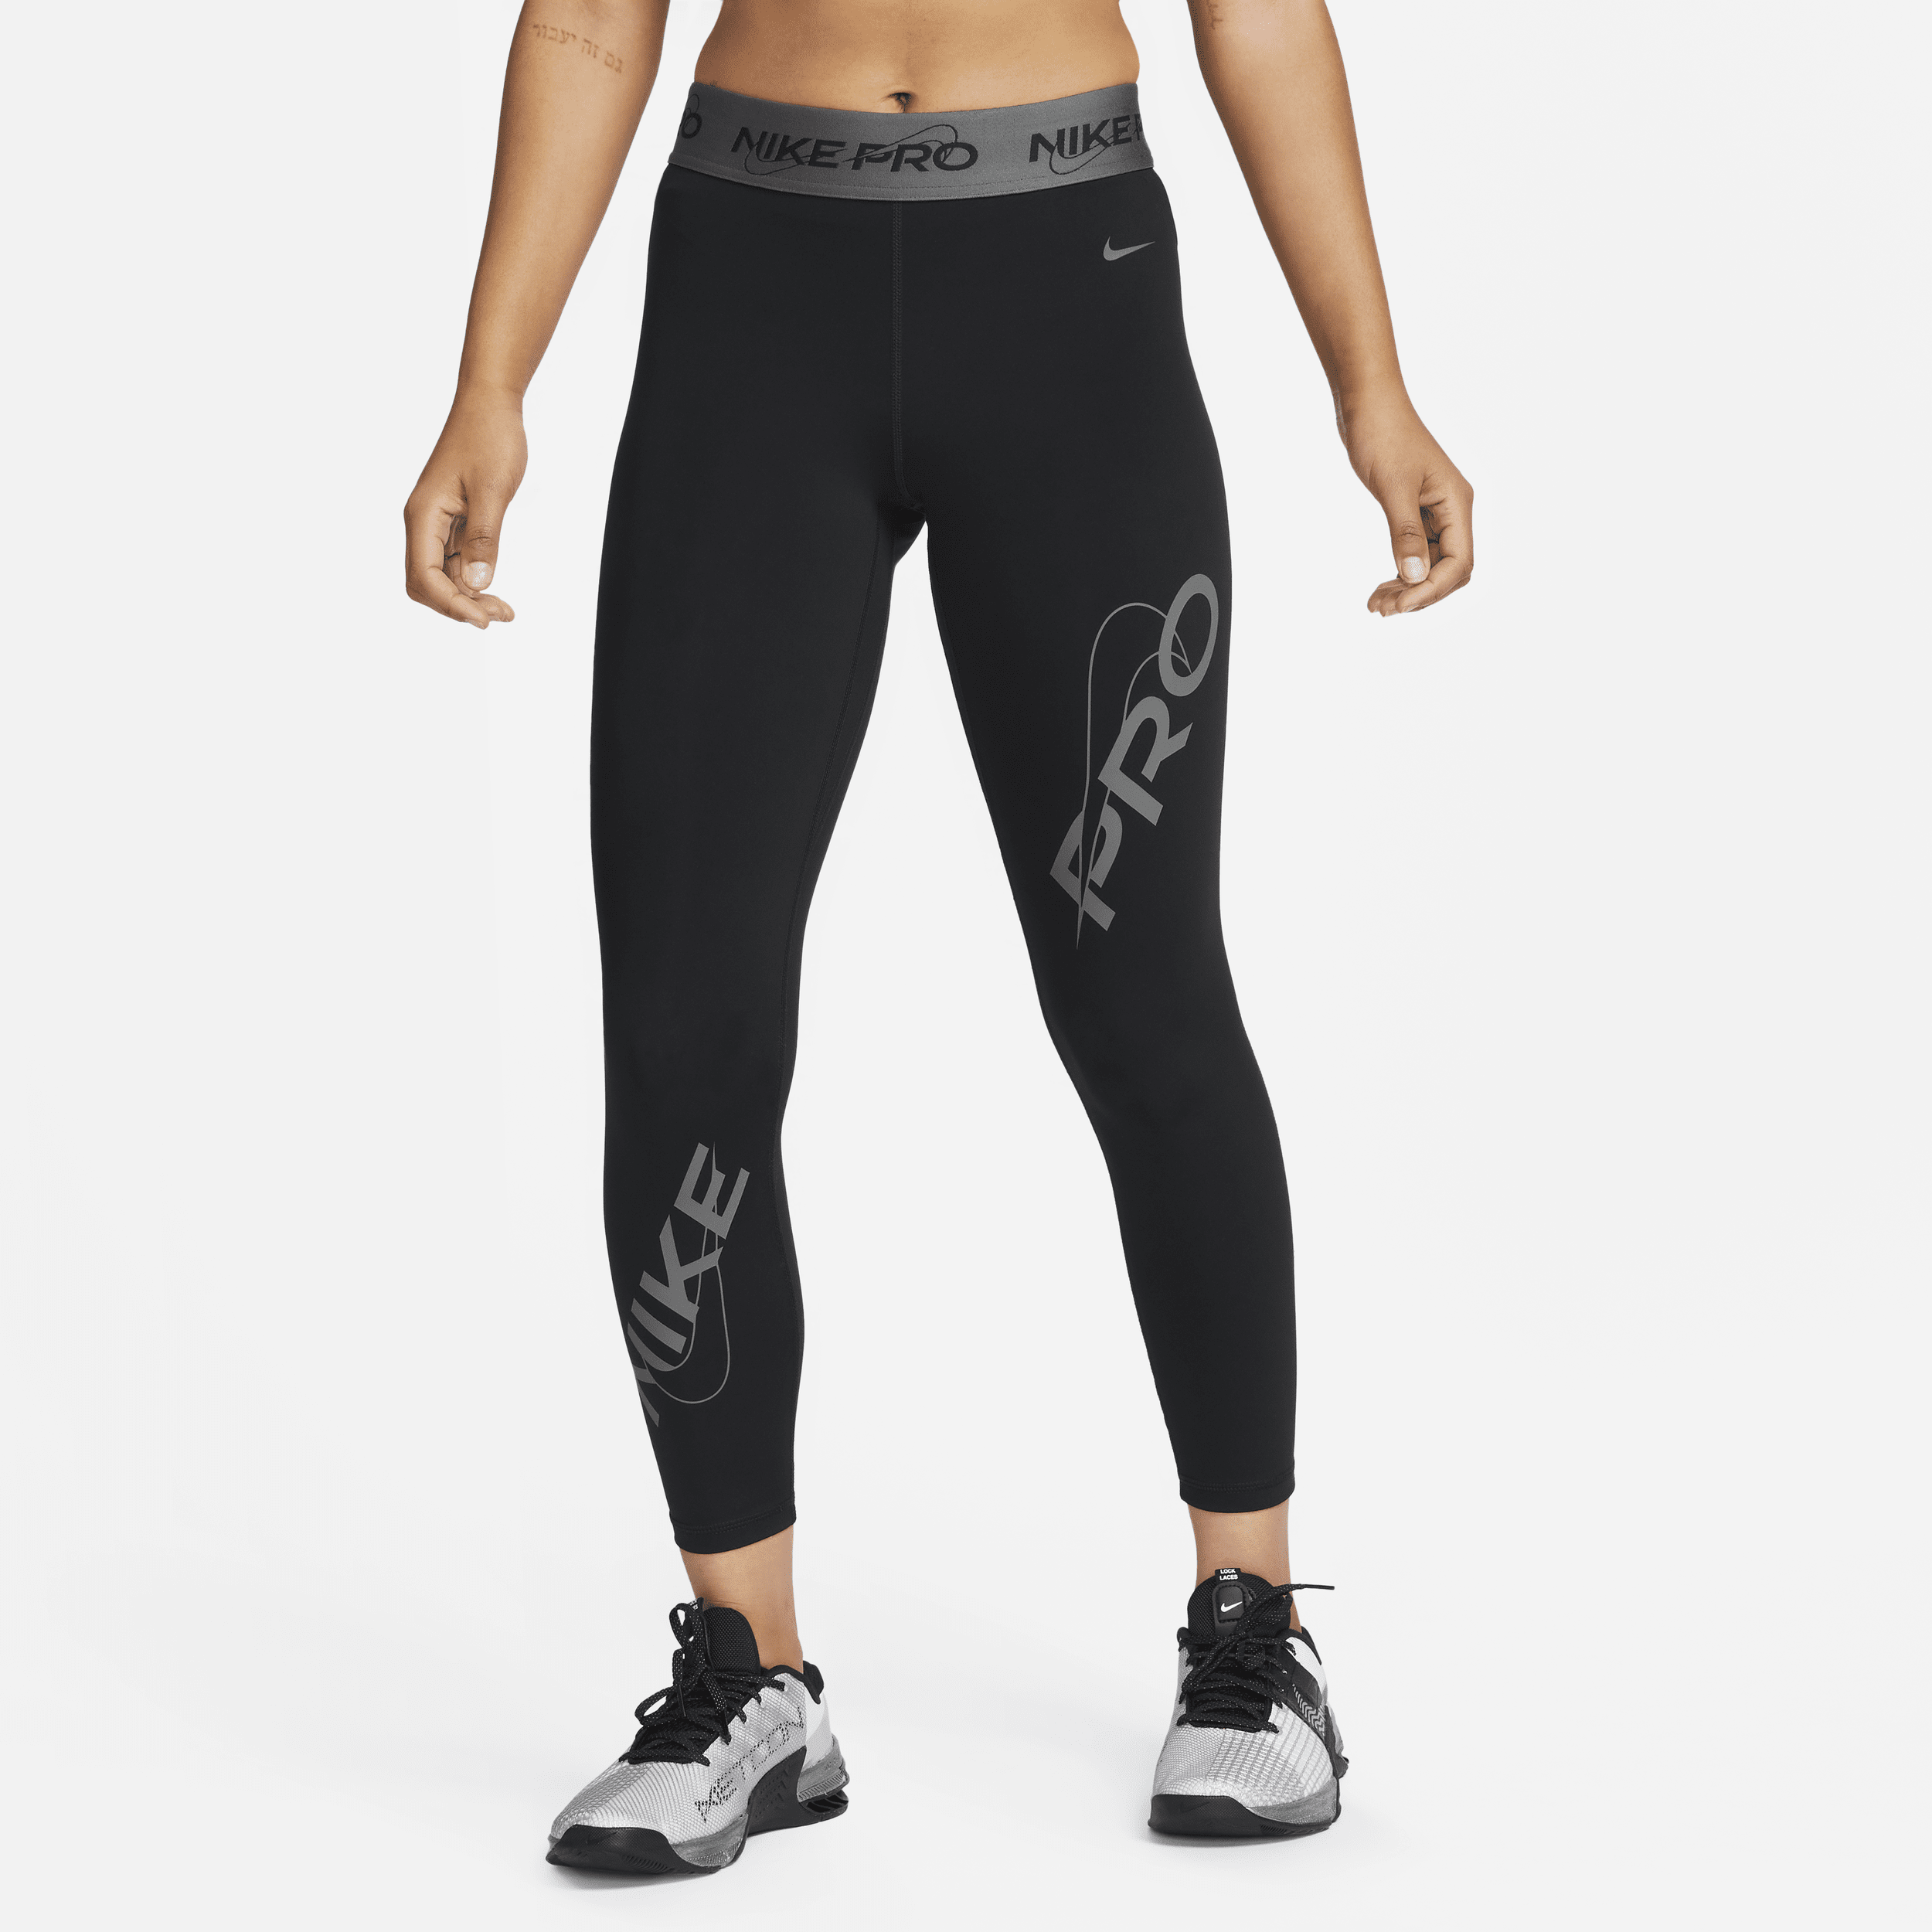 Leggings a 7/8 a vita media con grafica Nike Pro – Donna - Nero